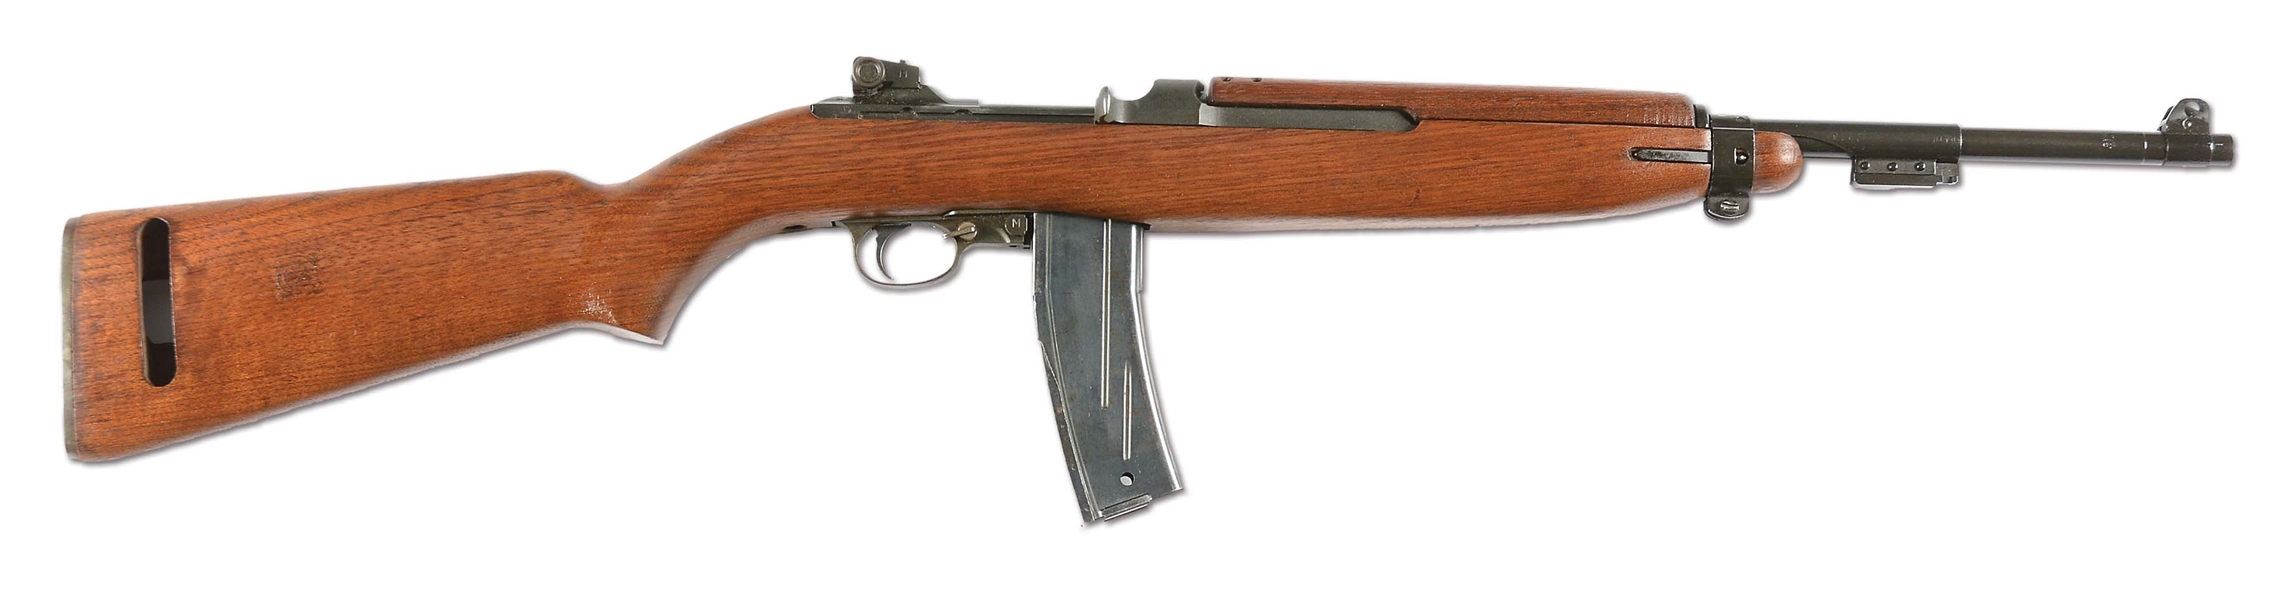 Lot Detail N Exceptionally Fine World War Ii Inland M2 Carbine Machine Gun Curio And Relic